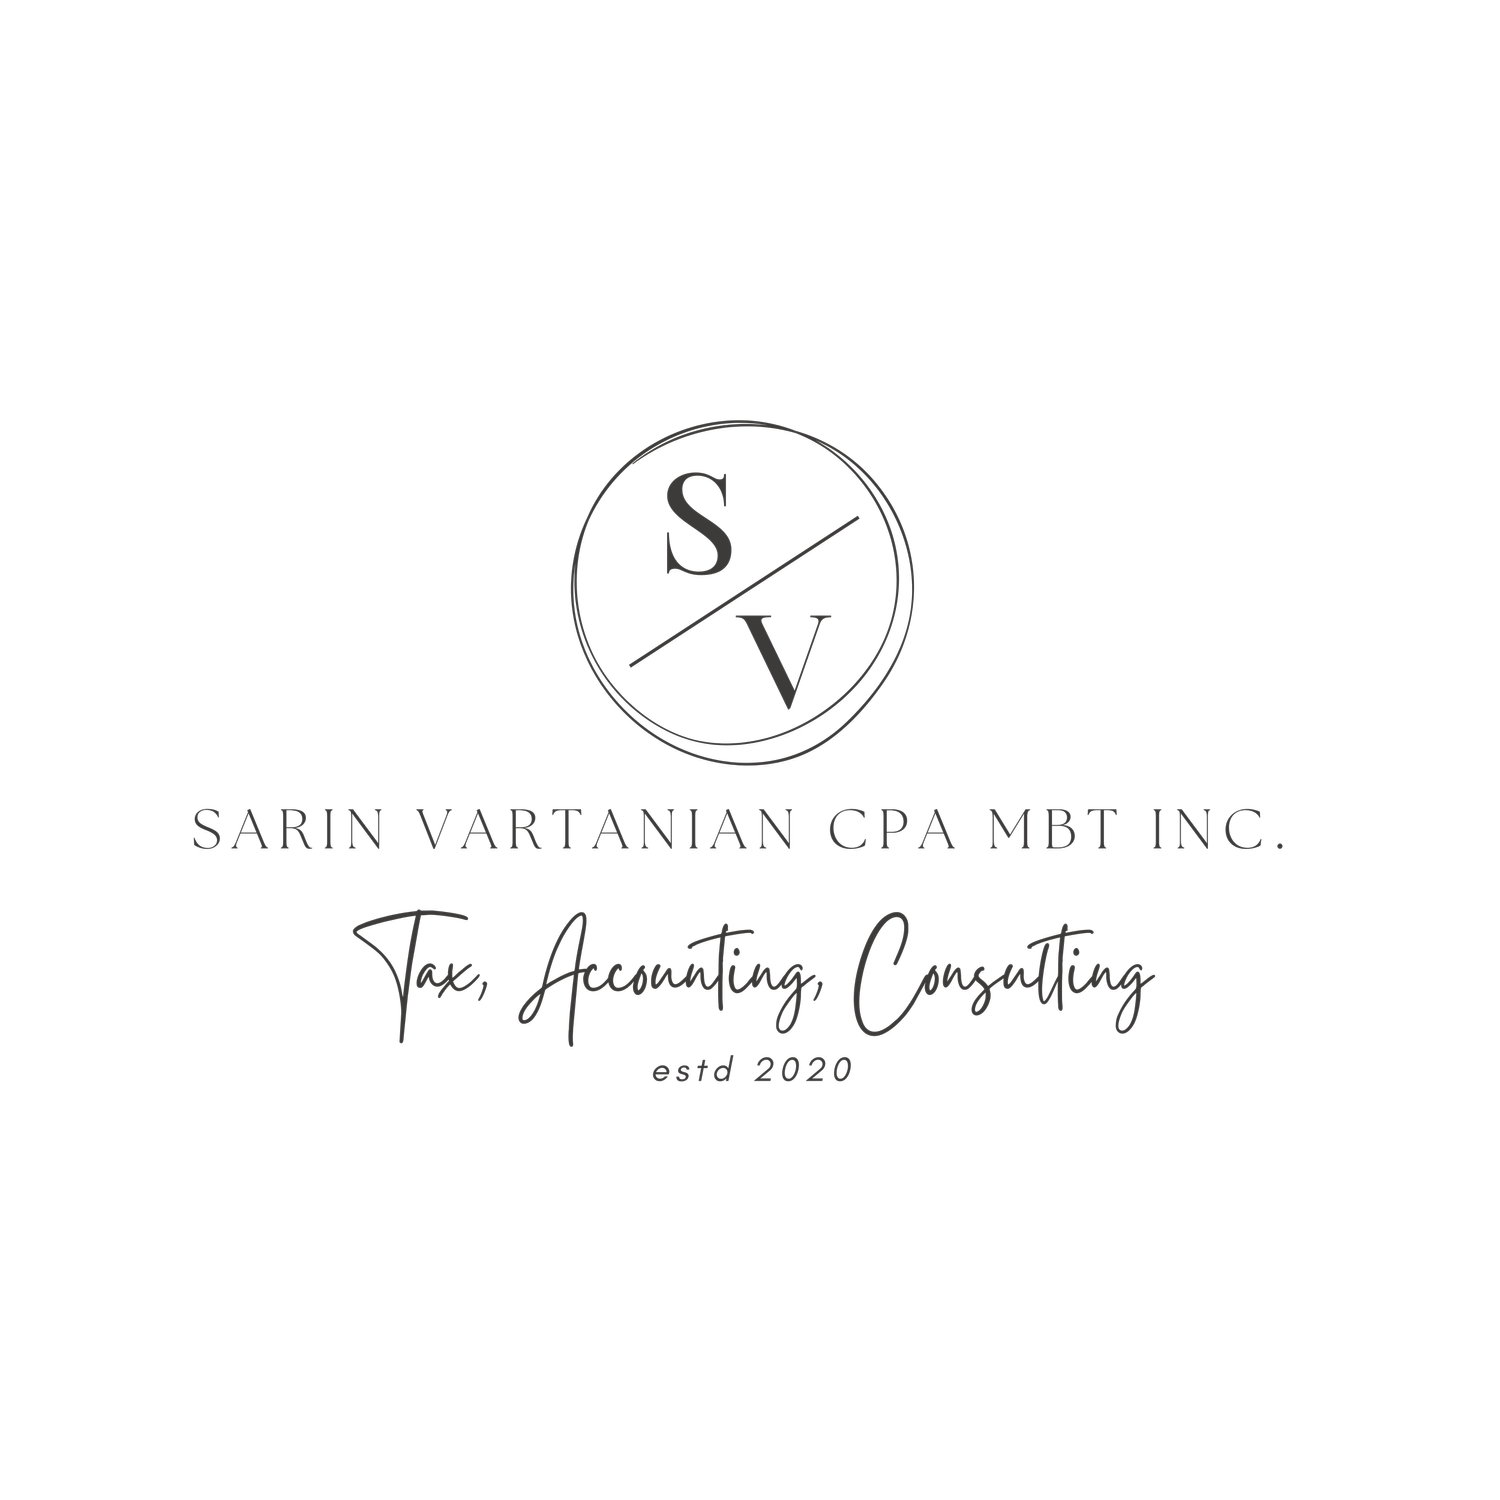 Sarin Vartanian CPA MBT Inc. 